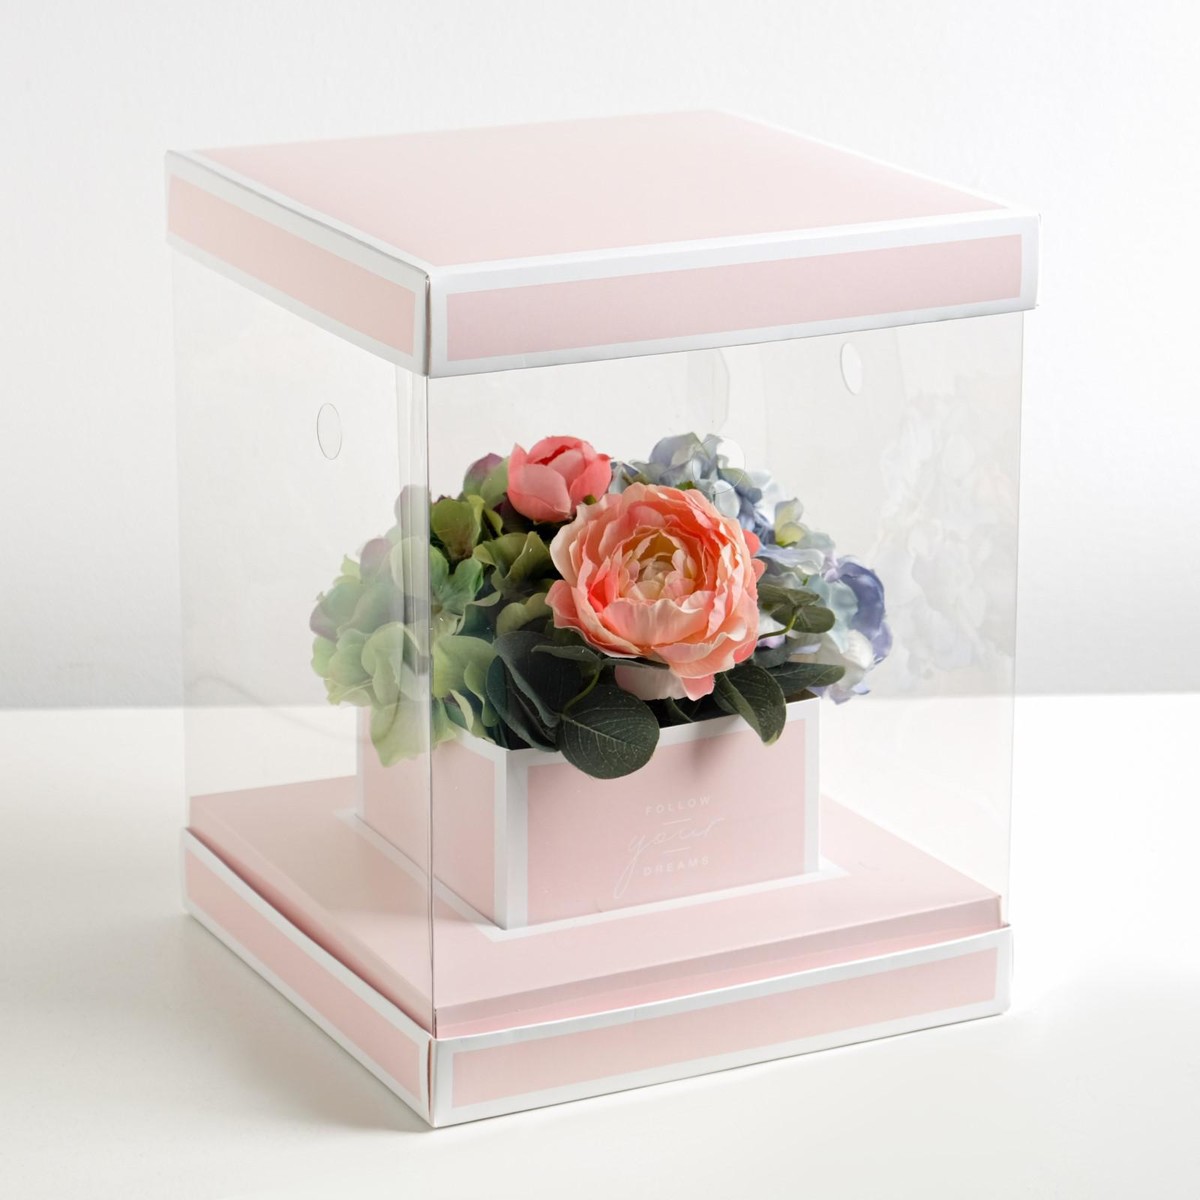 Коробка подарочная для цветов с вазой и pvc окнами складная, упаковка, follow your dreams, 23 х 30 х 23 см коробка для ов с вазой и pvc окнами складная 23 х 30 х 23 см белый